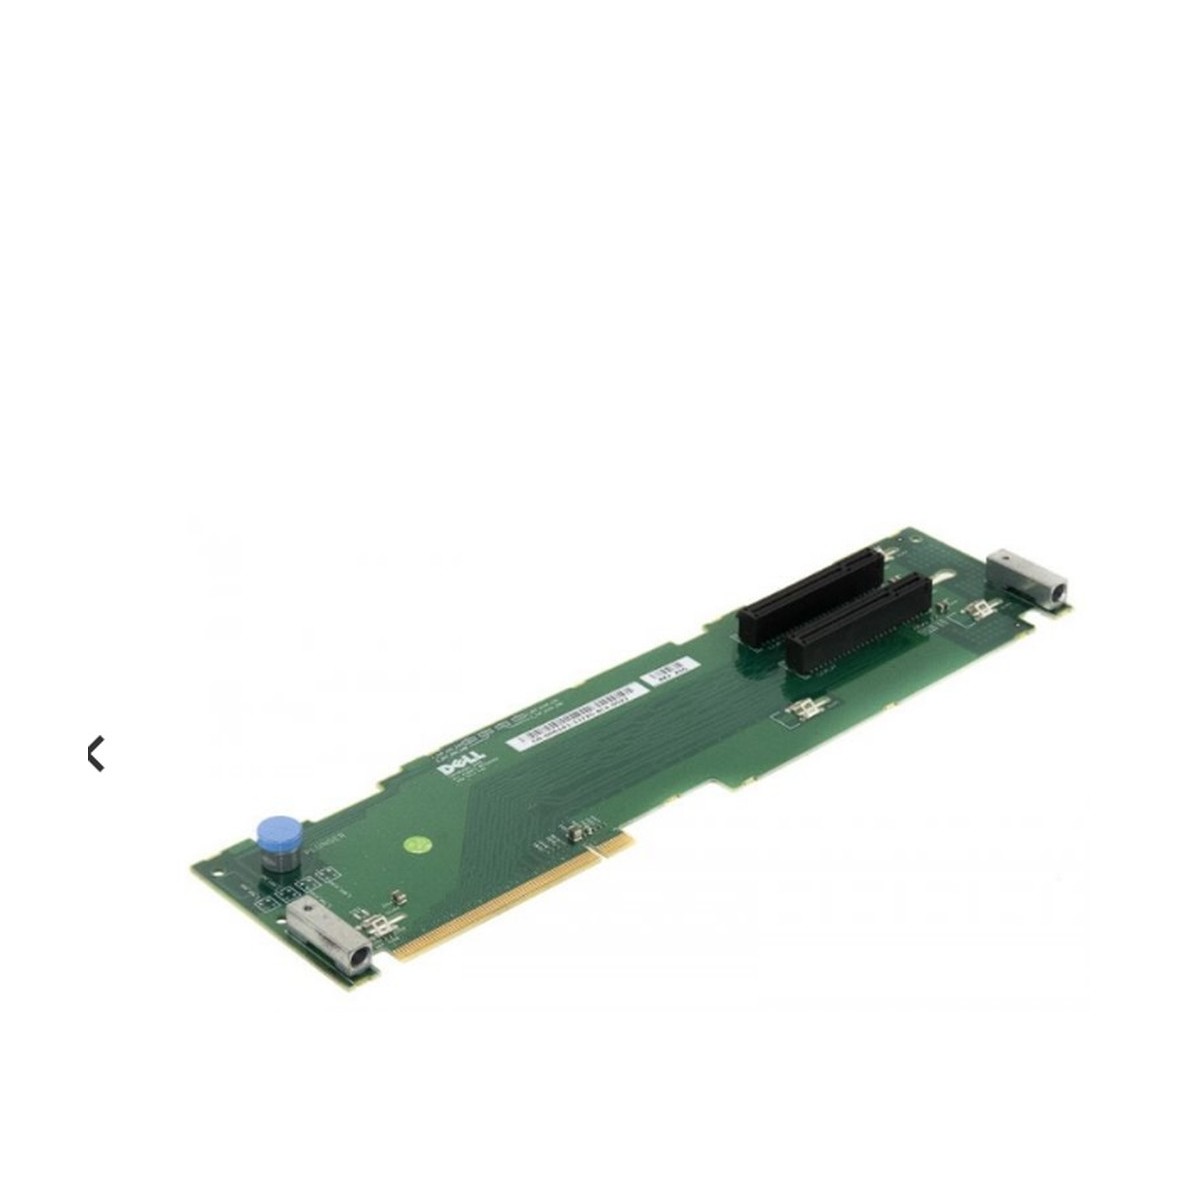 RISER BOARD PCIE x8 x4 POWEREDGE 2950 0H6183